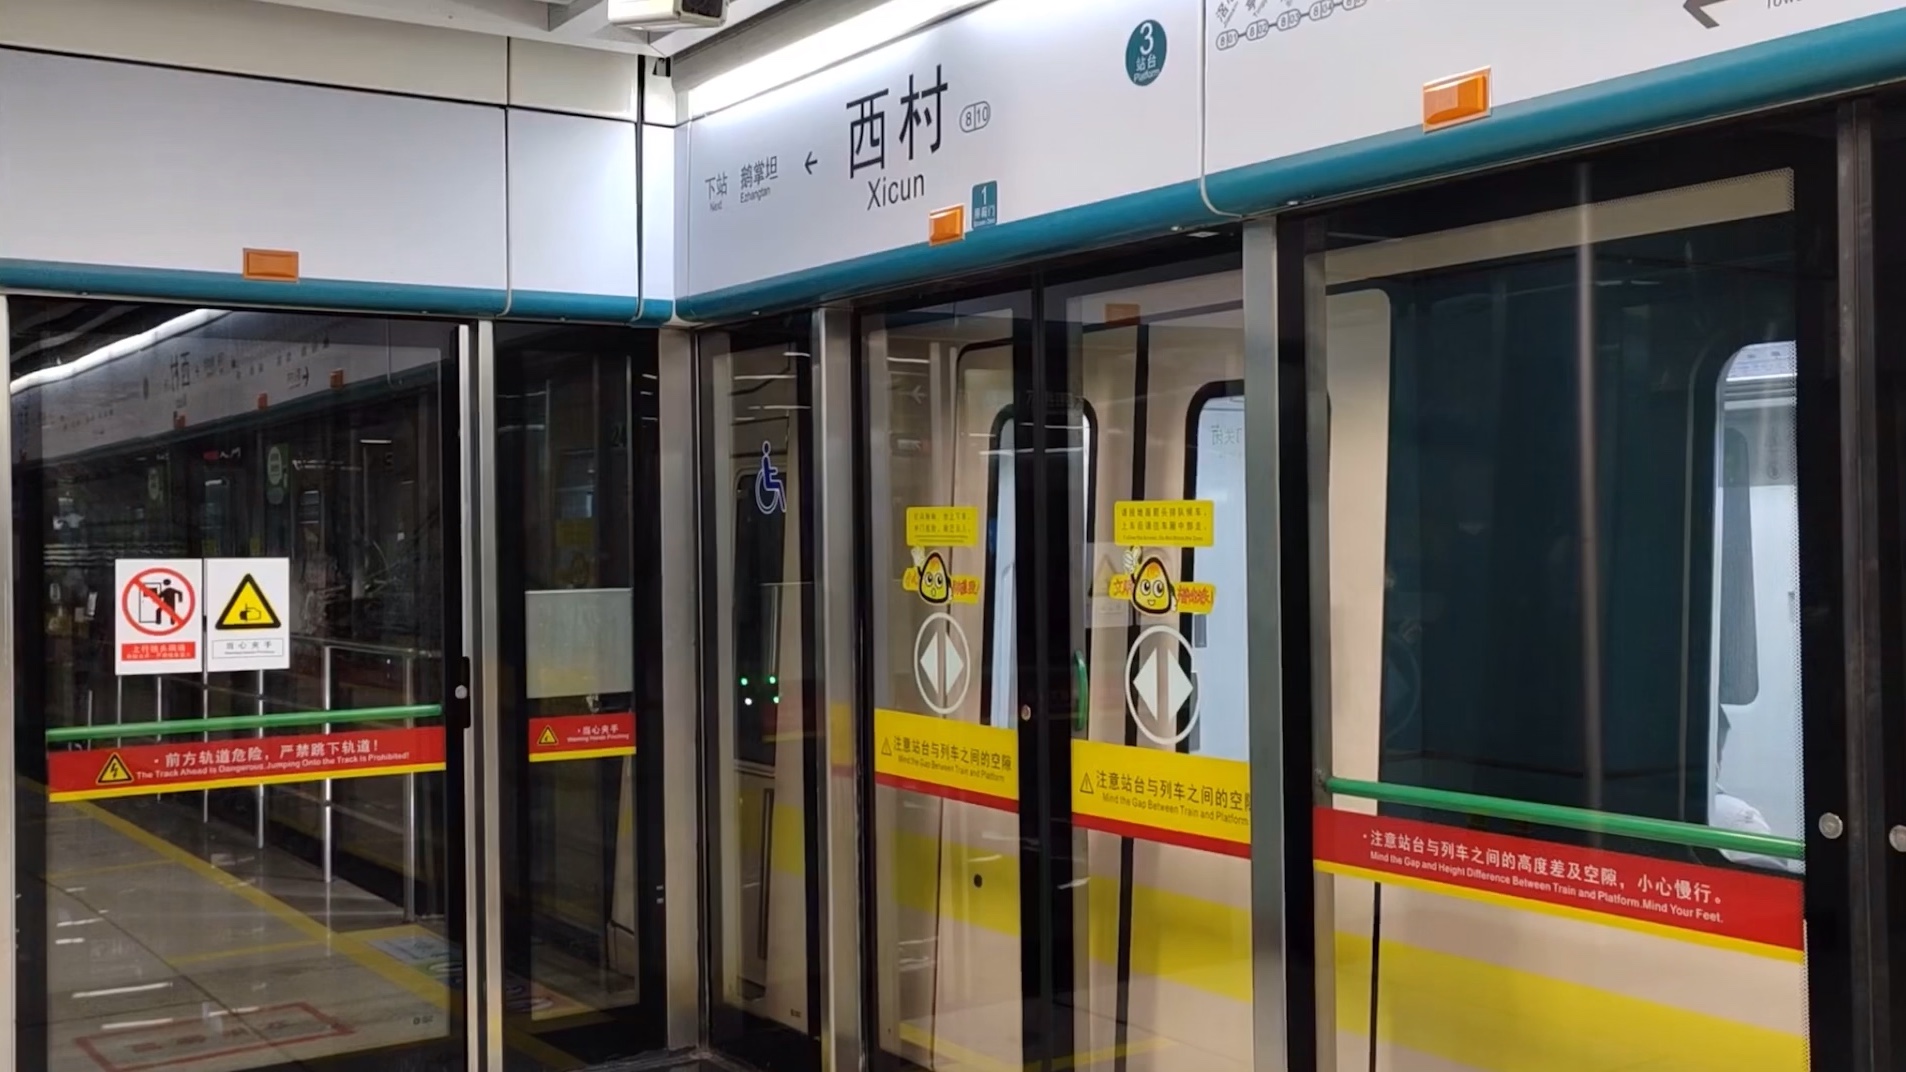 【广州地铁】8号线a6型列车出西村站(中车时代igbt